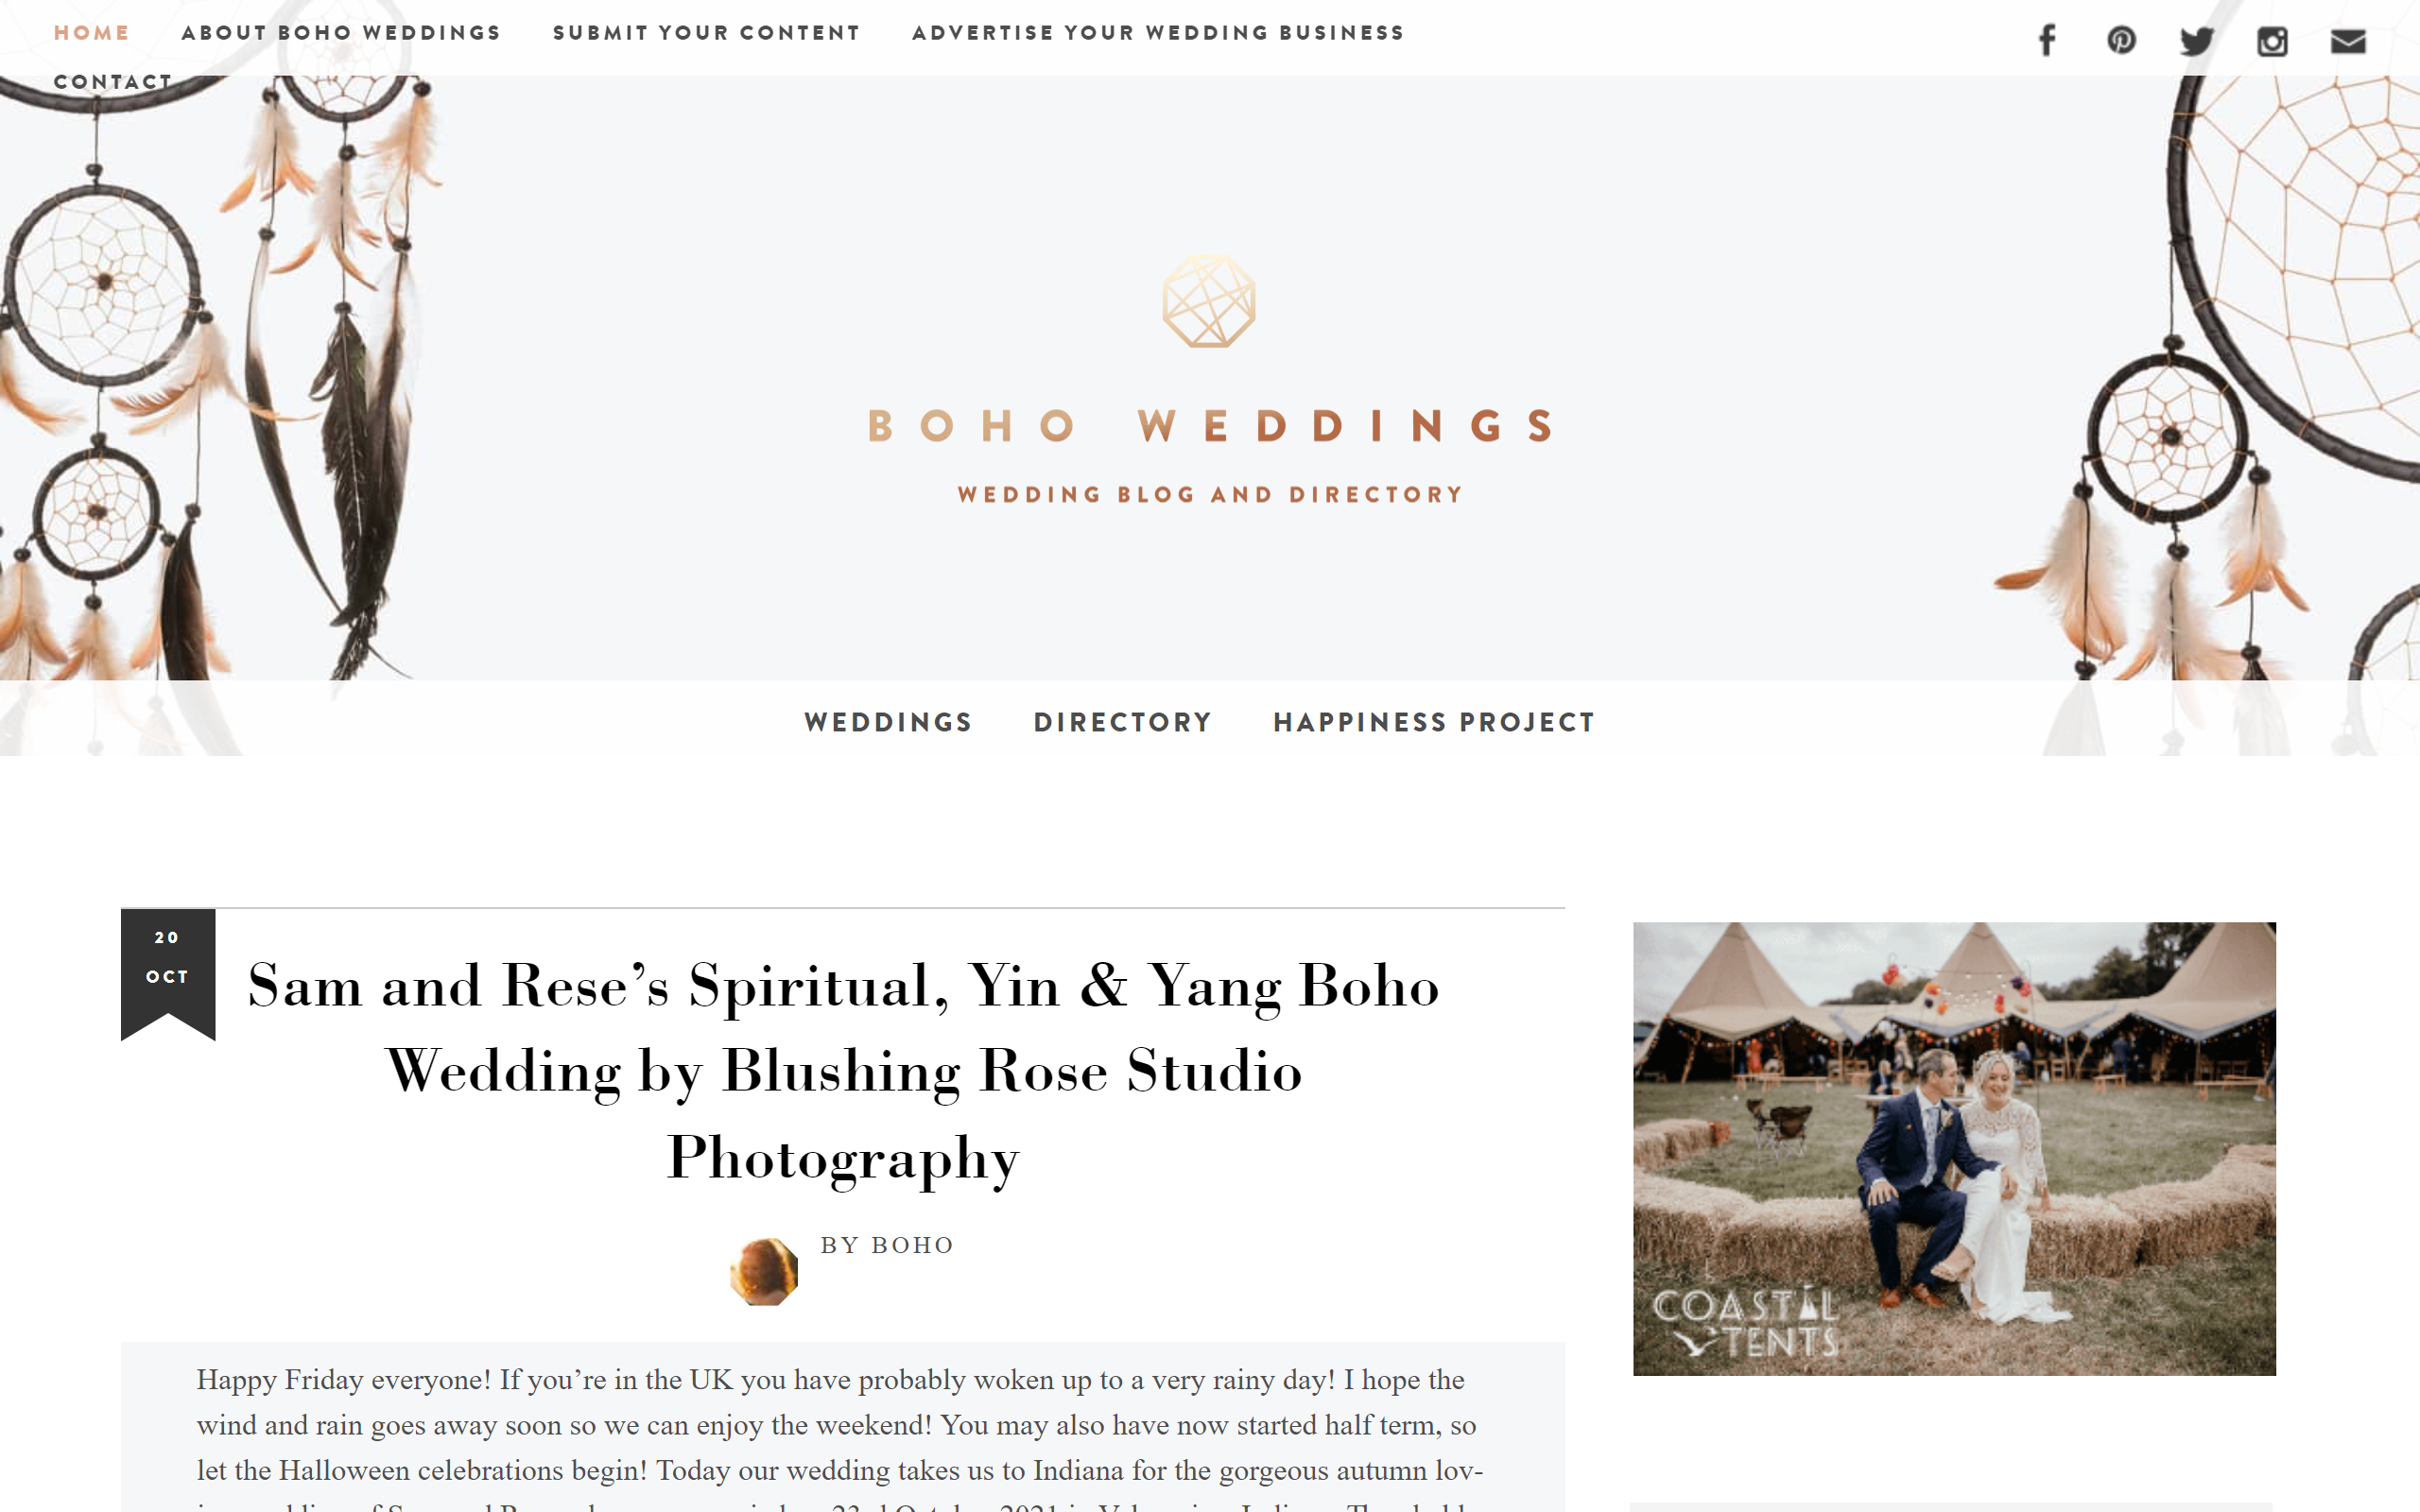 Boho Weddings Wedding Blog